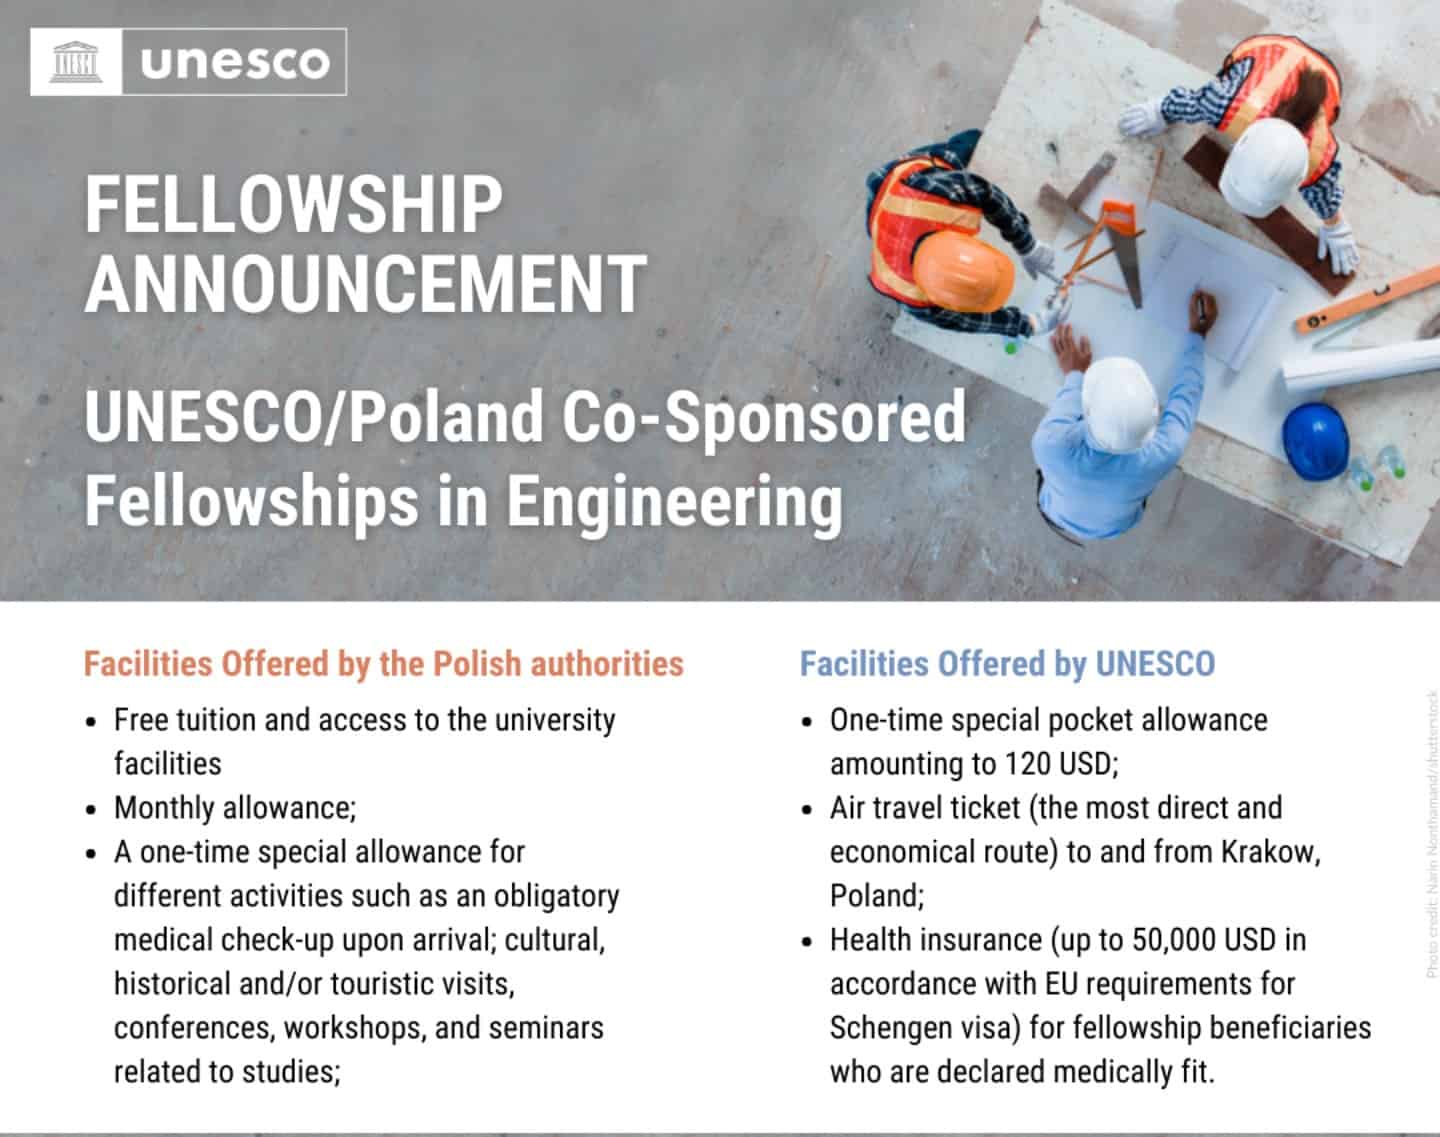 UNESCO / Poland Co-Sponsored Fellowships Programme